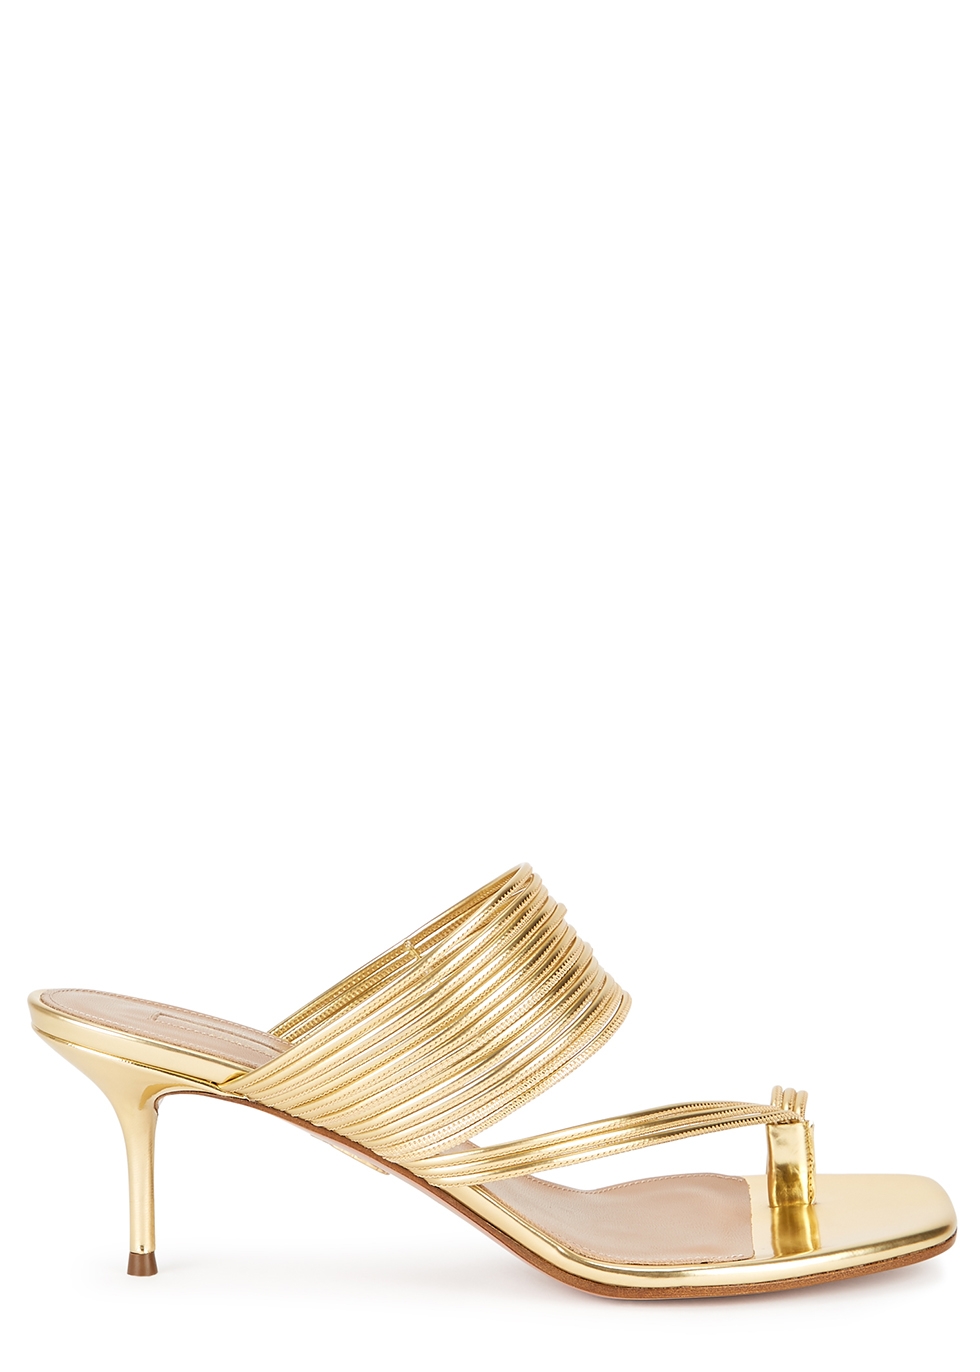 aquazzura gold shoes